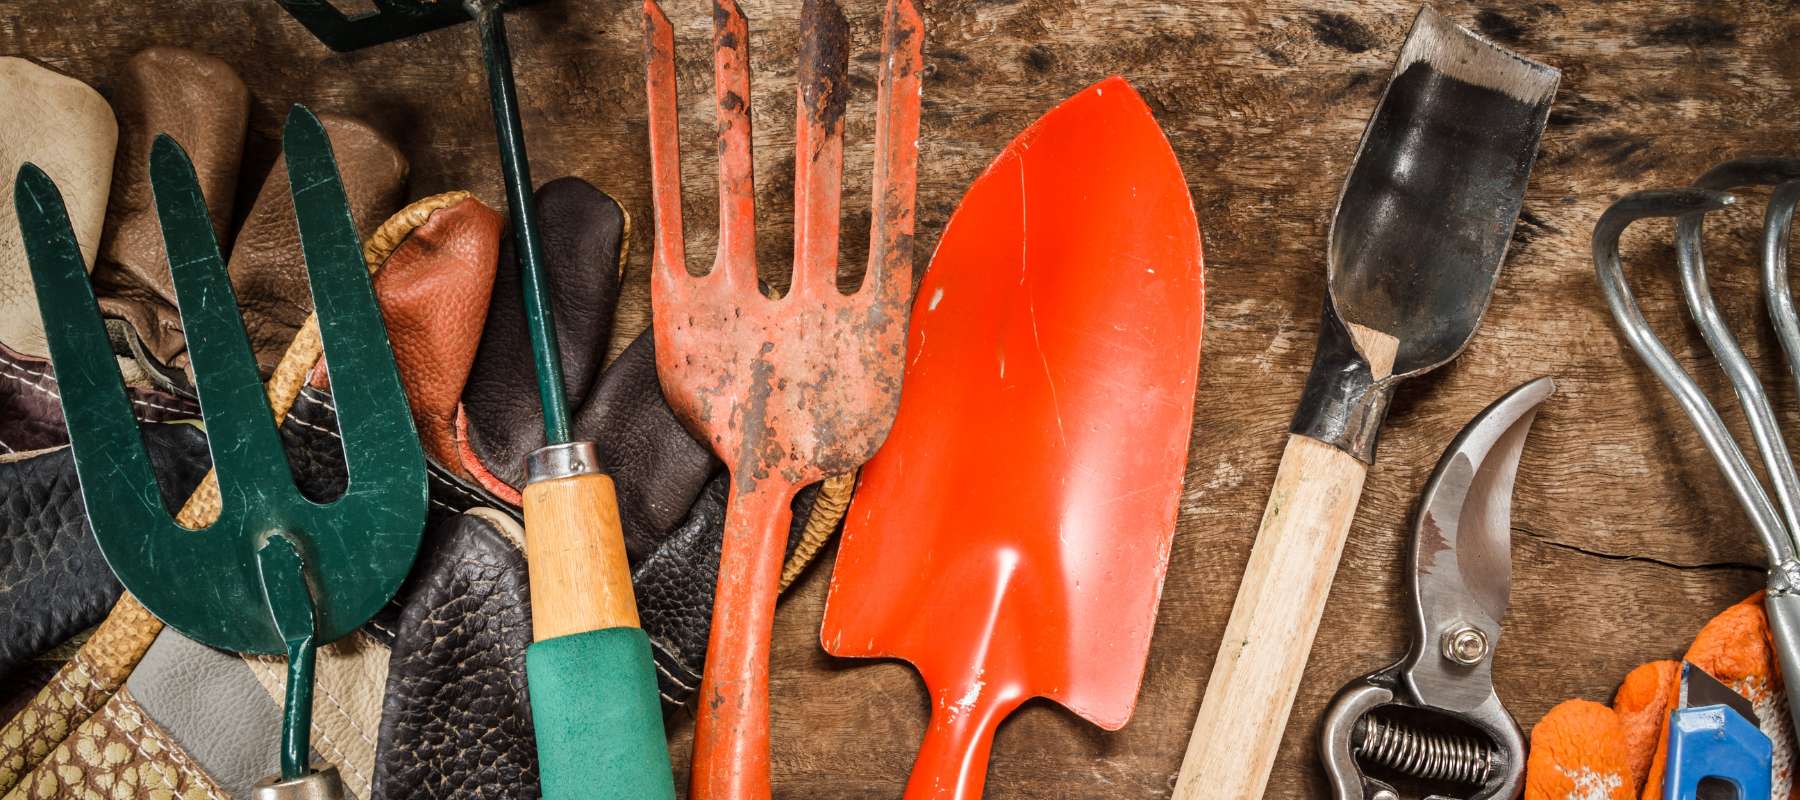 6 tips for garden tool maintenance